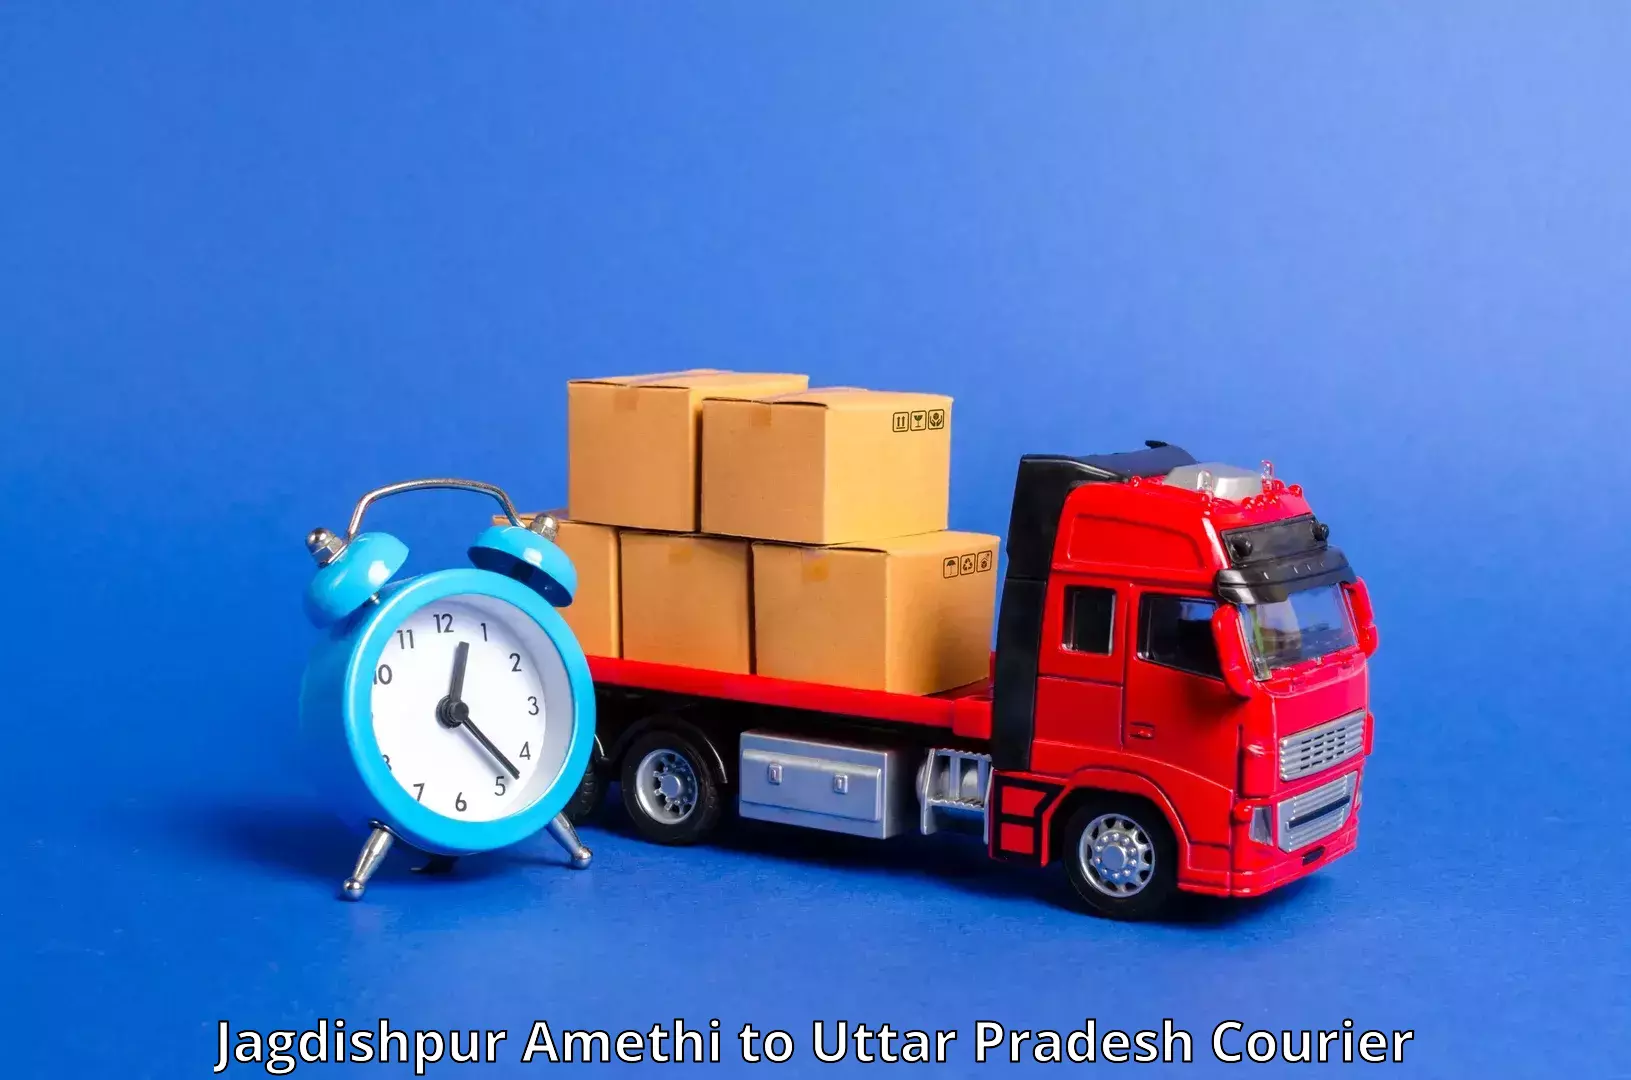 Cross-border shipping Jagdishpur Amethi to Aligarh Muslim University